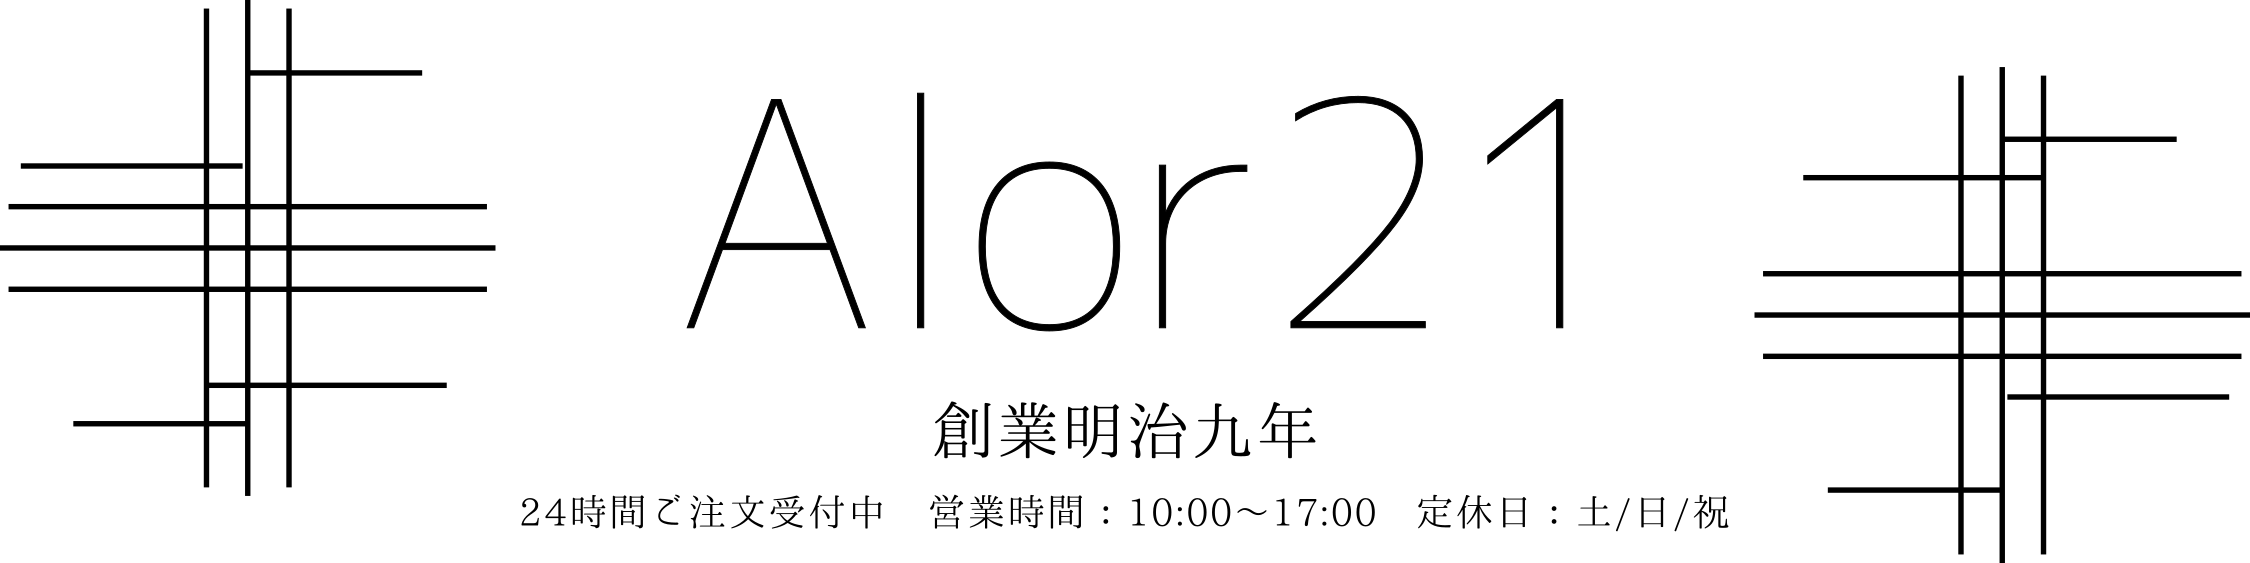 アロール21 Yahoo!店 ロゴ